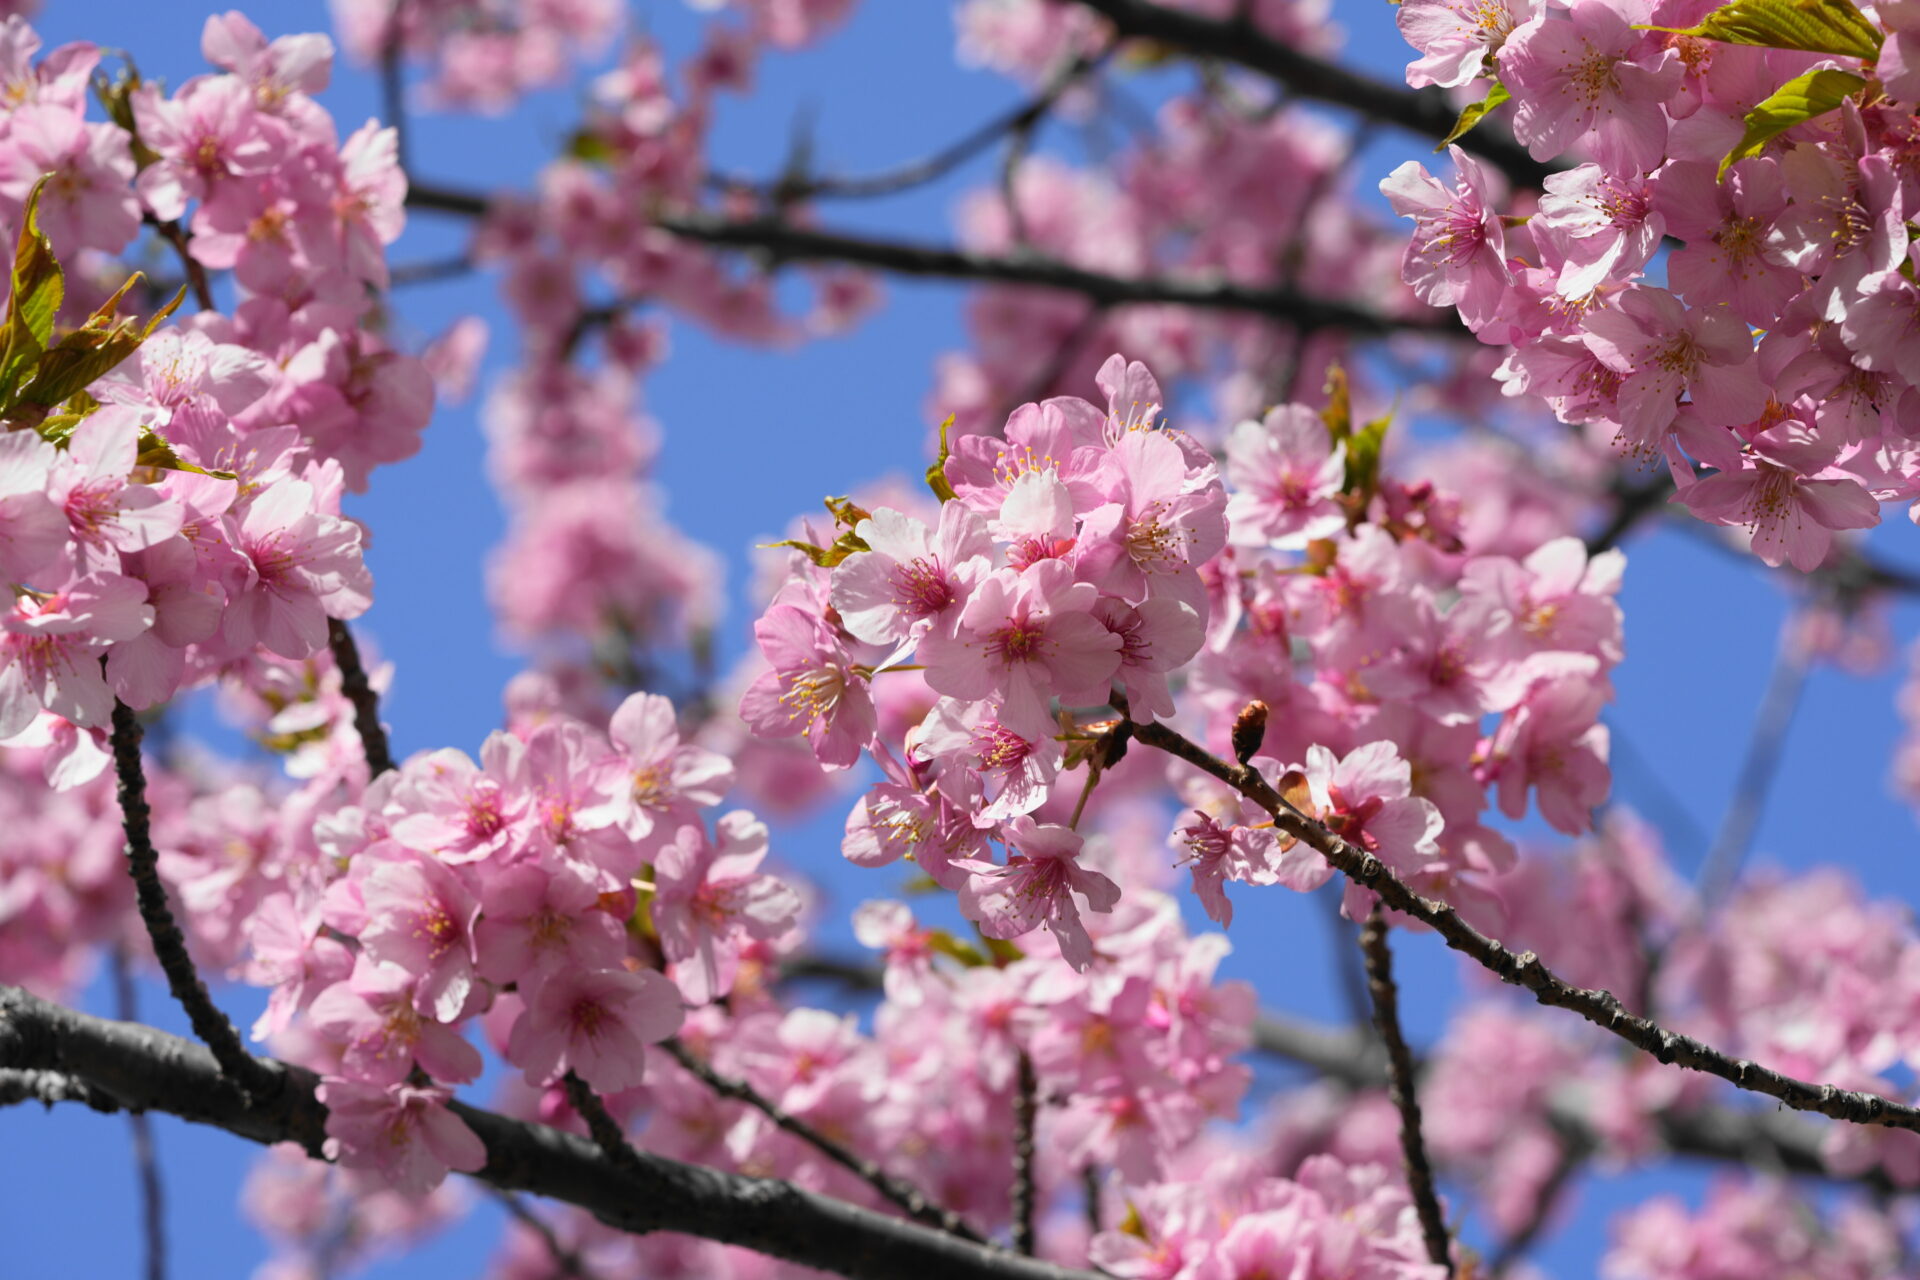 空の青さを利用し補色の効果で桜の色を際立たせた写真